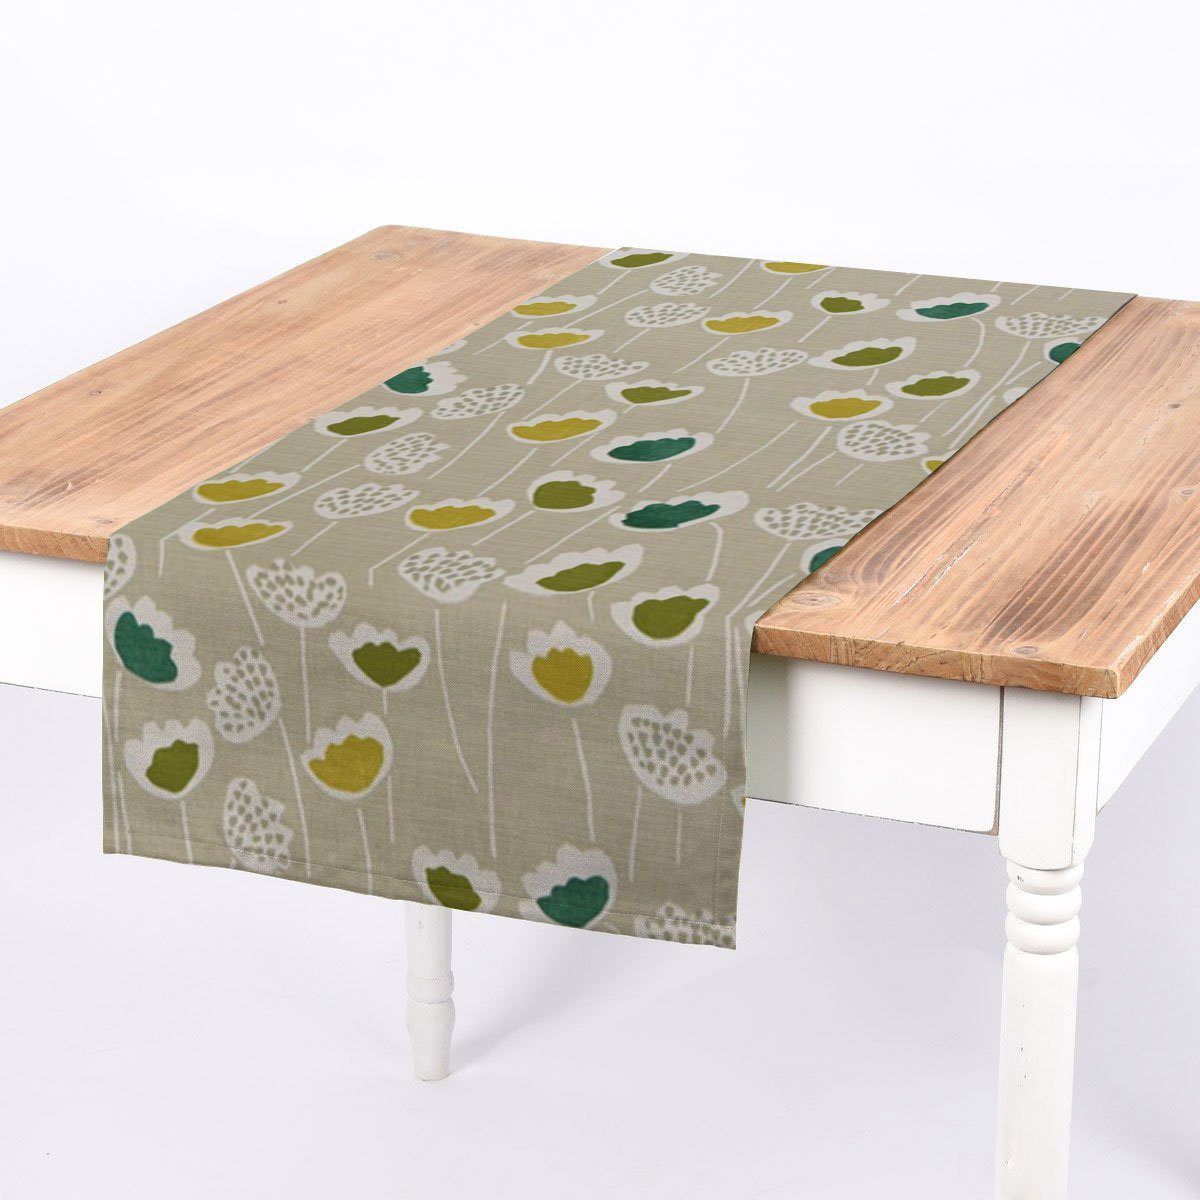 SCHÖNER LEBEN. Tischläufer SCHÖNER LEBEN. Tischläufer Clara Cactus Blumen grau grün 40x160cm, handmade